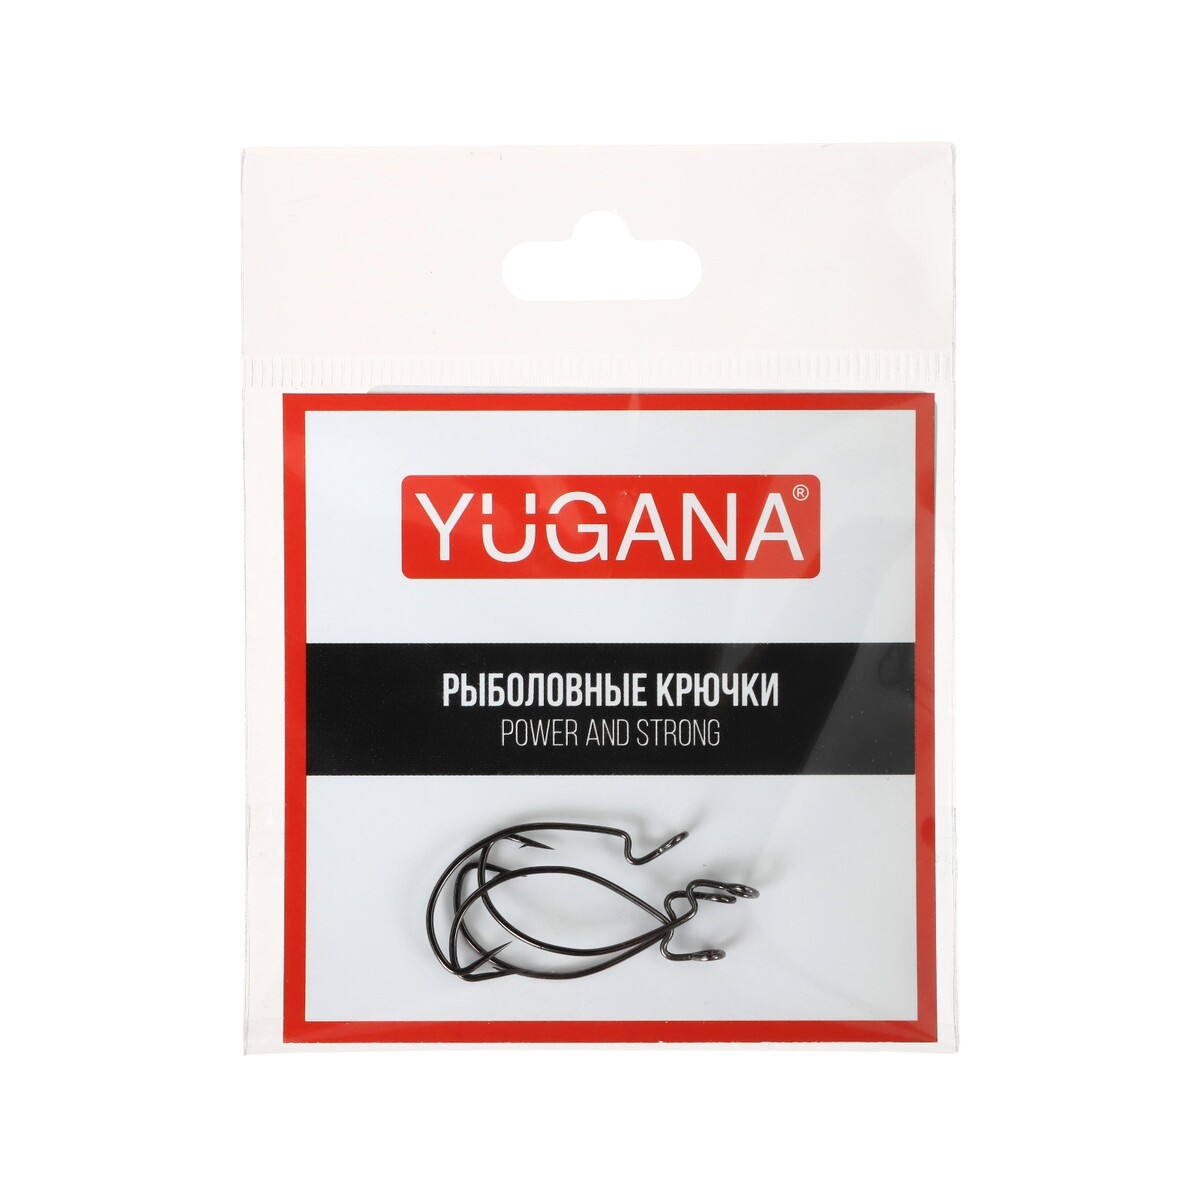   yugana wide range worm big eye,   8, 4 